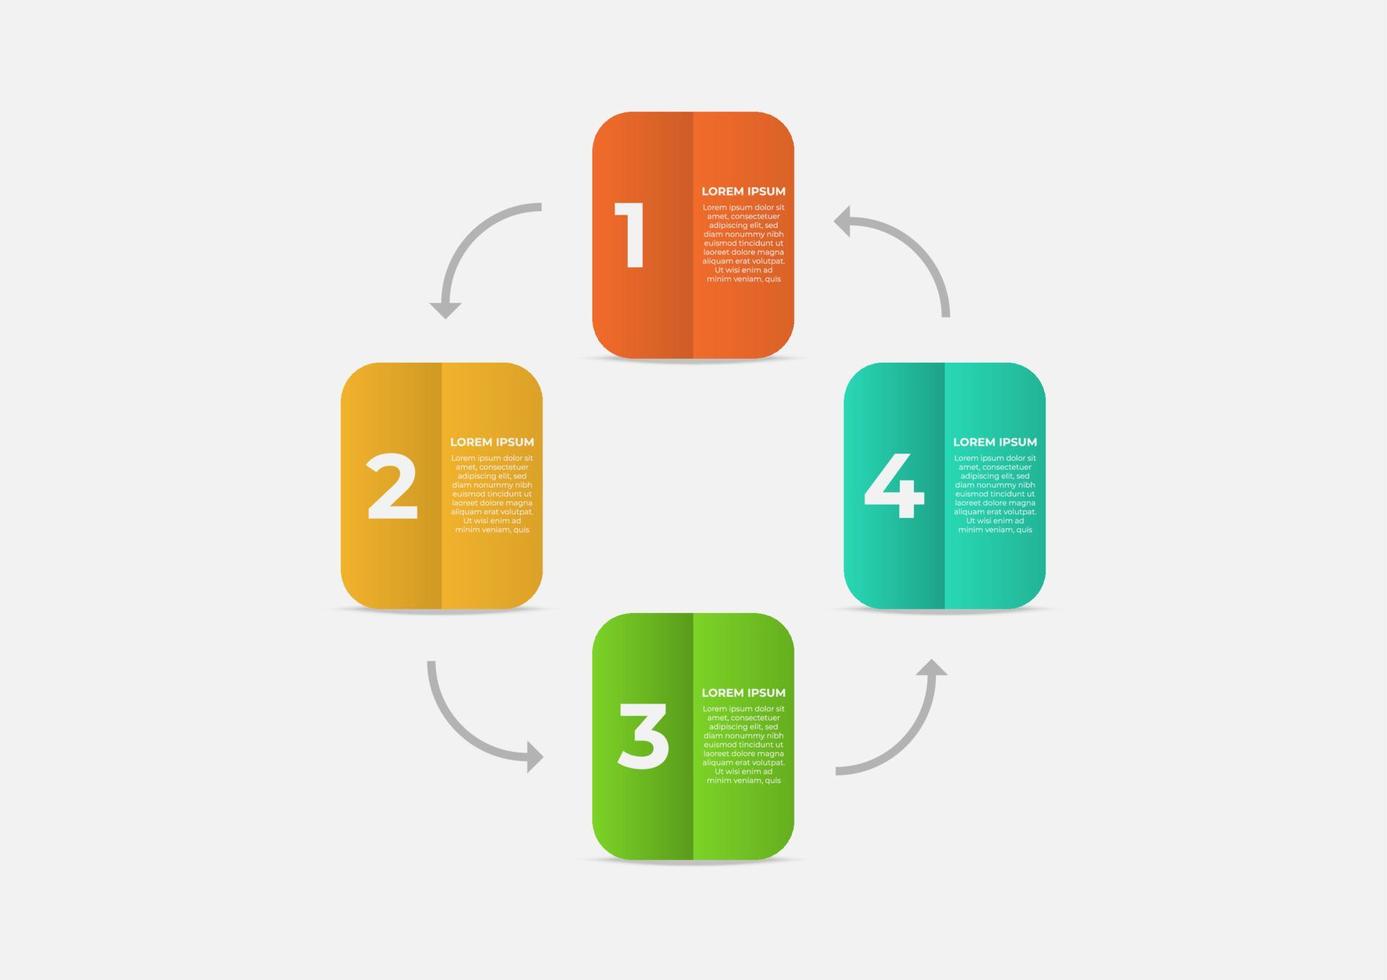 estilo de papel de livro colorido do modelo infográfico com 4 etapas. modelo de negócios de vetor para apresentação. conceito criativo para infográfico. adequado para fluxo de trabalho, relatório anual, gráfico, layouts